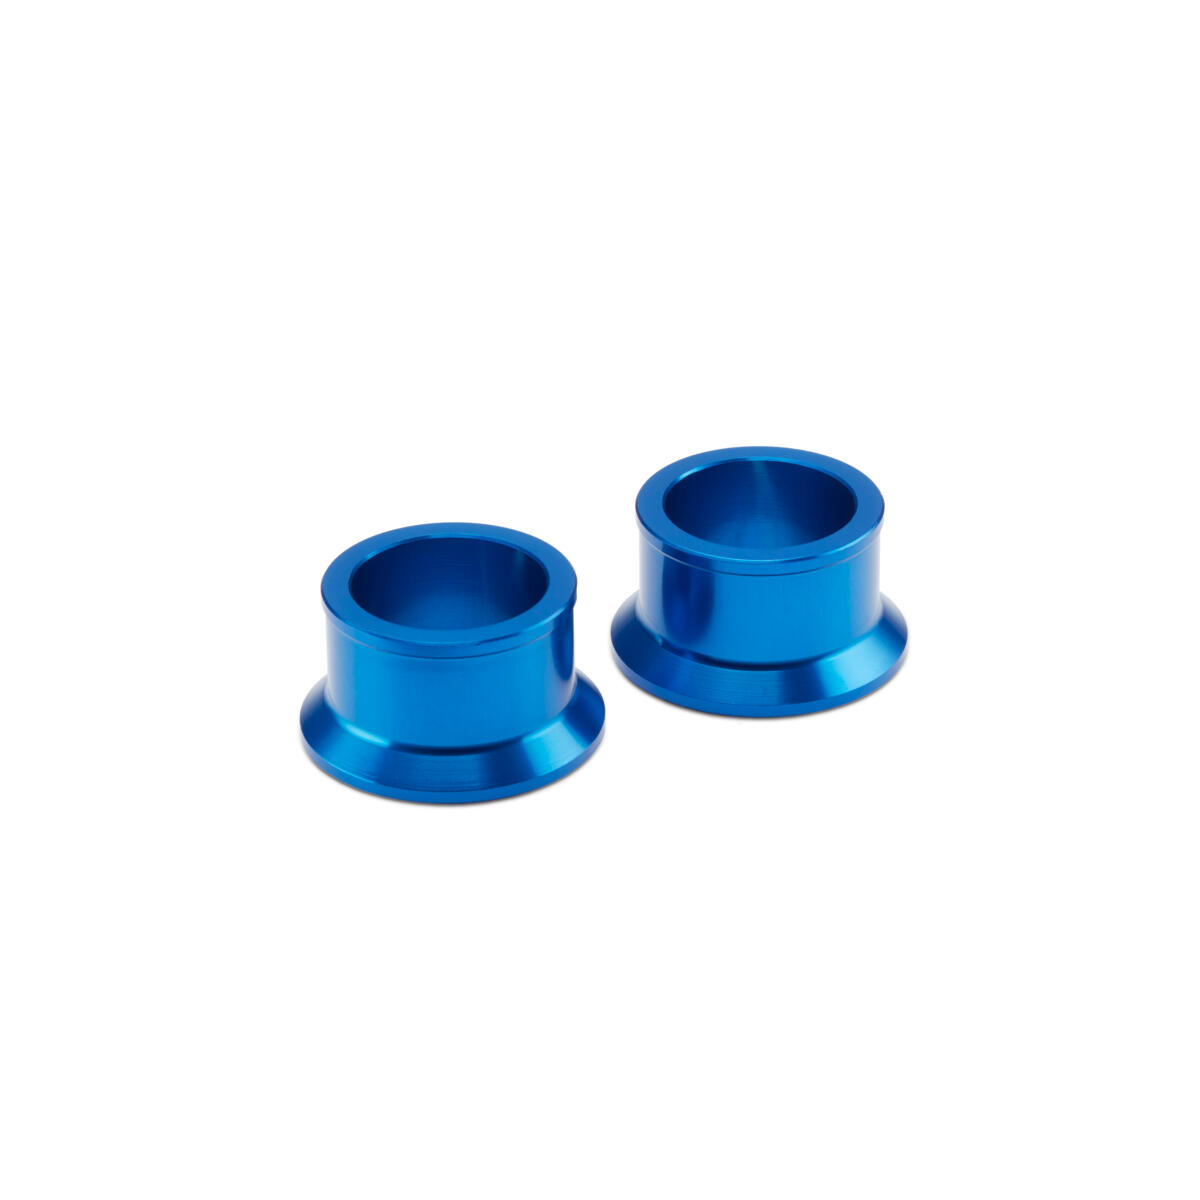 Plavim umecima za stražnji kotač od 22 mm dobivate tvornički trkaći izgled i funkciju.